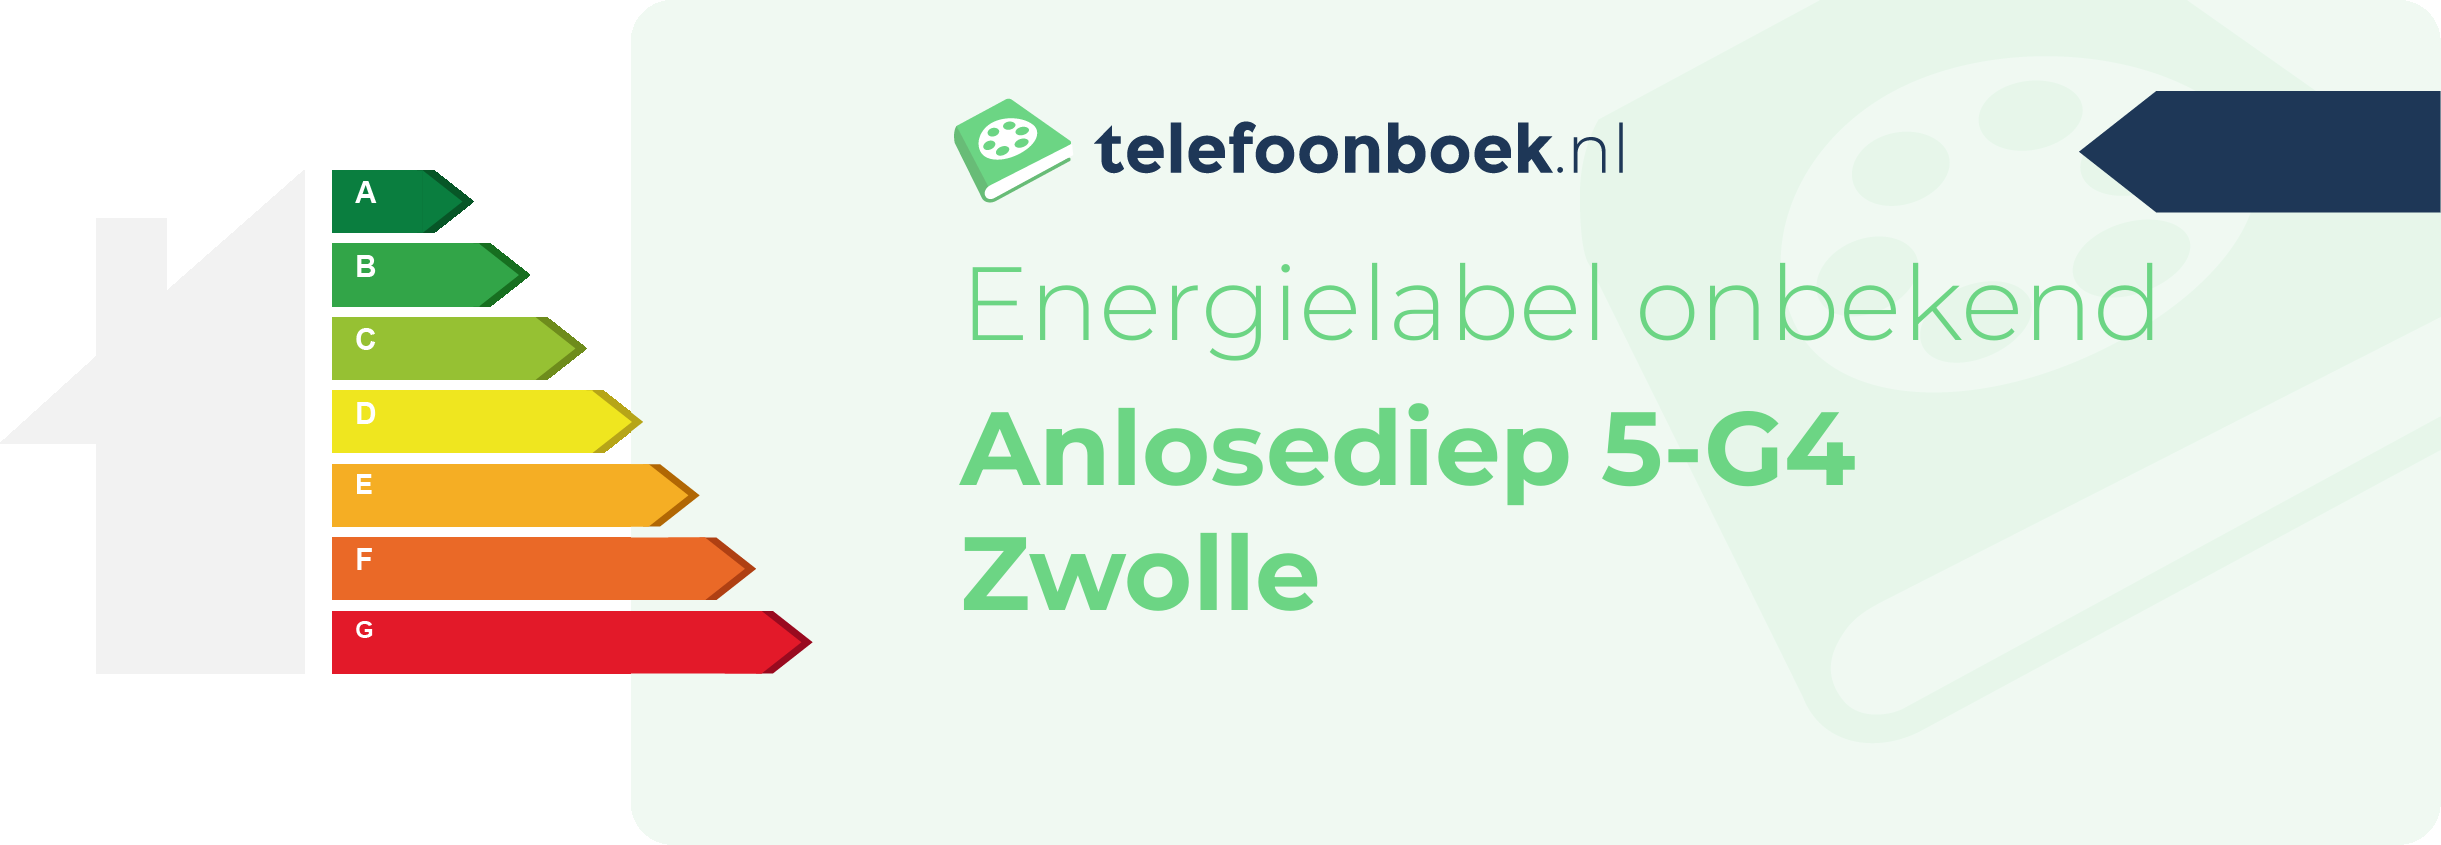 Energielabel Anlosediep 5-G4 Zwolle